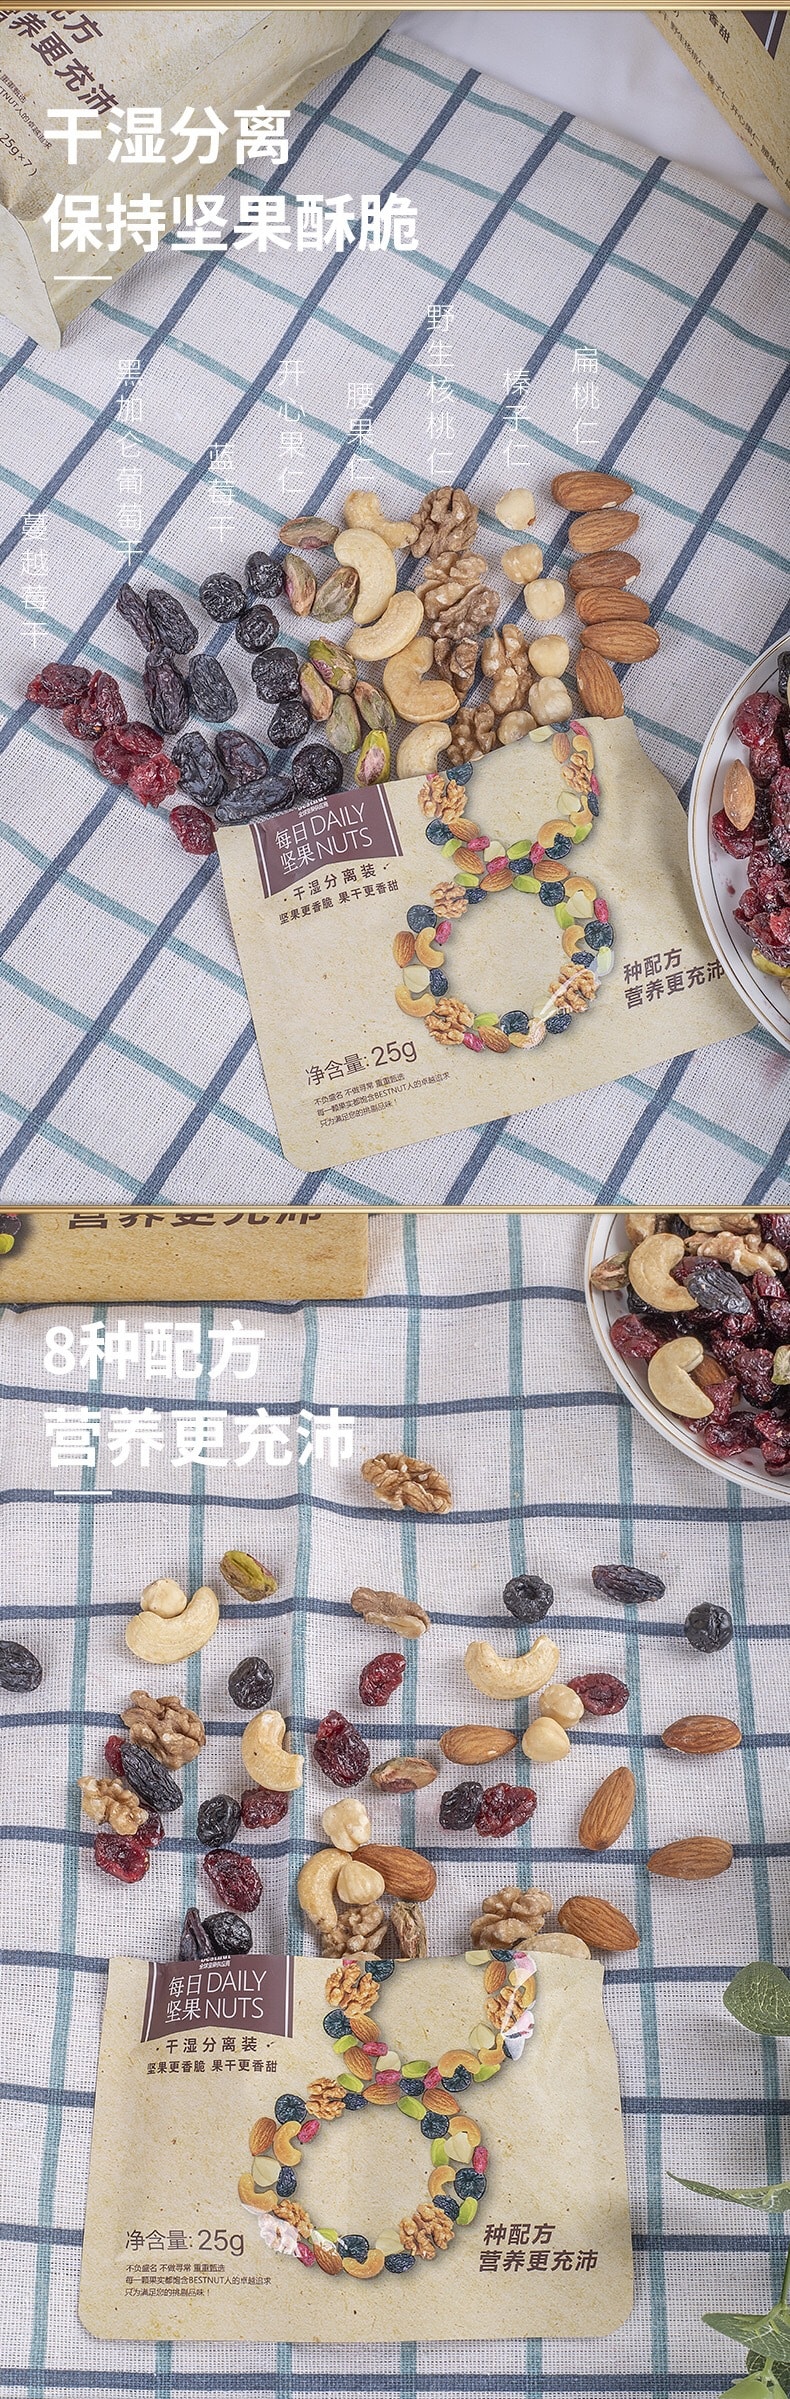 [中国直邮]Bestnut佰斯纳特每日坚果干湿分离干果零食25g/袋